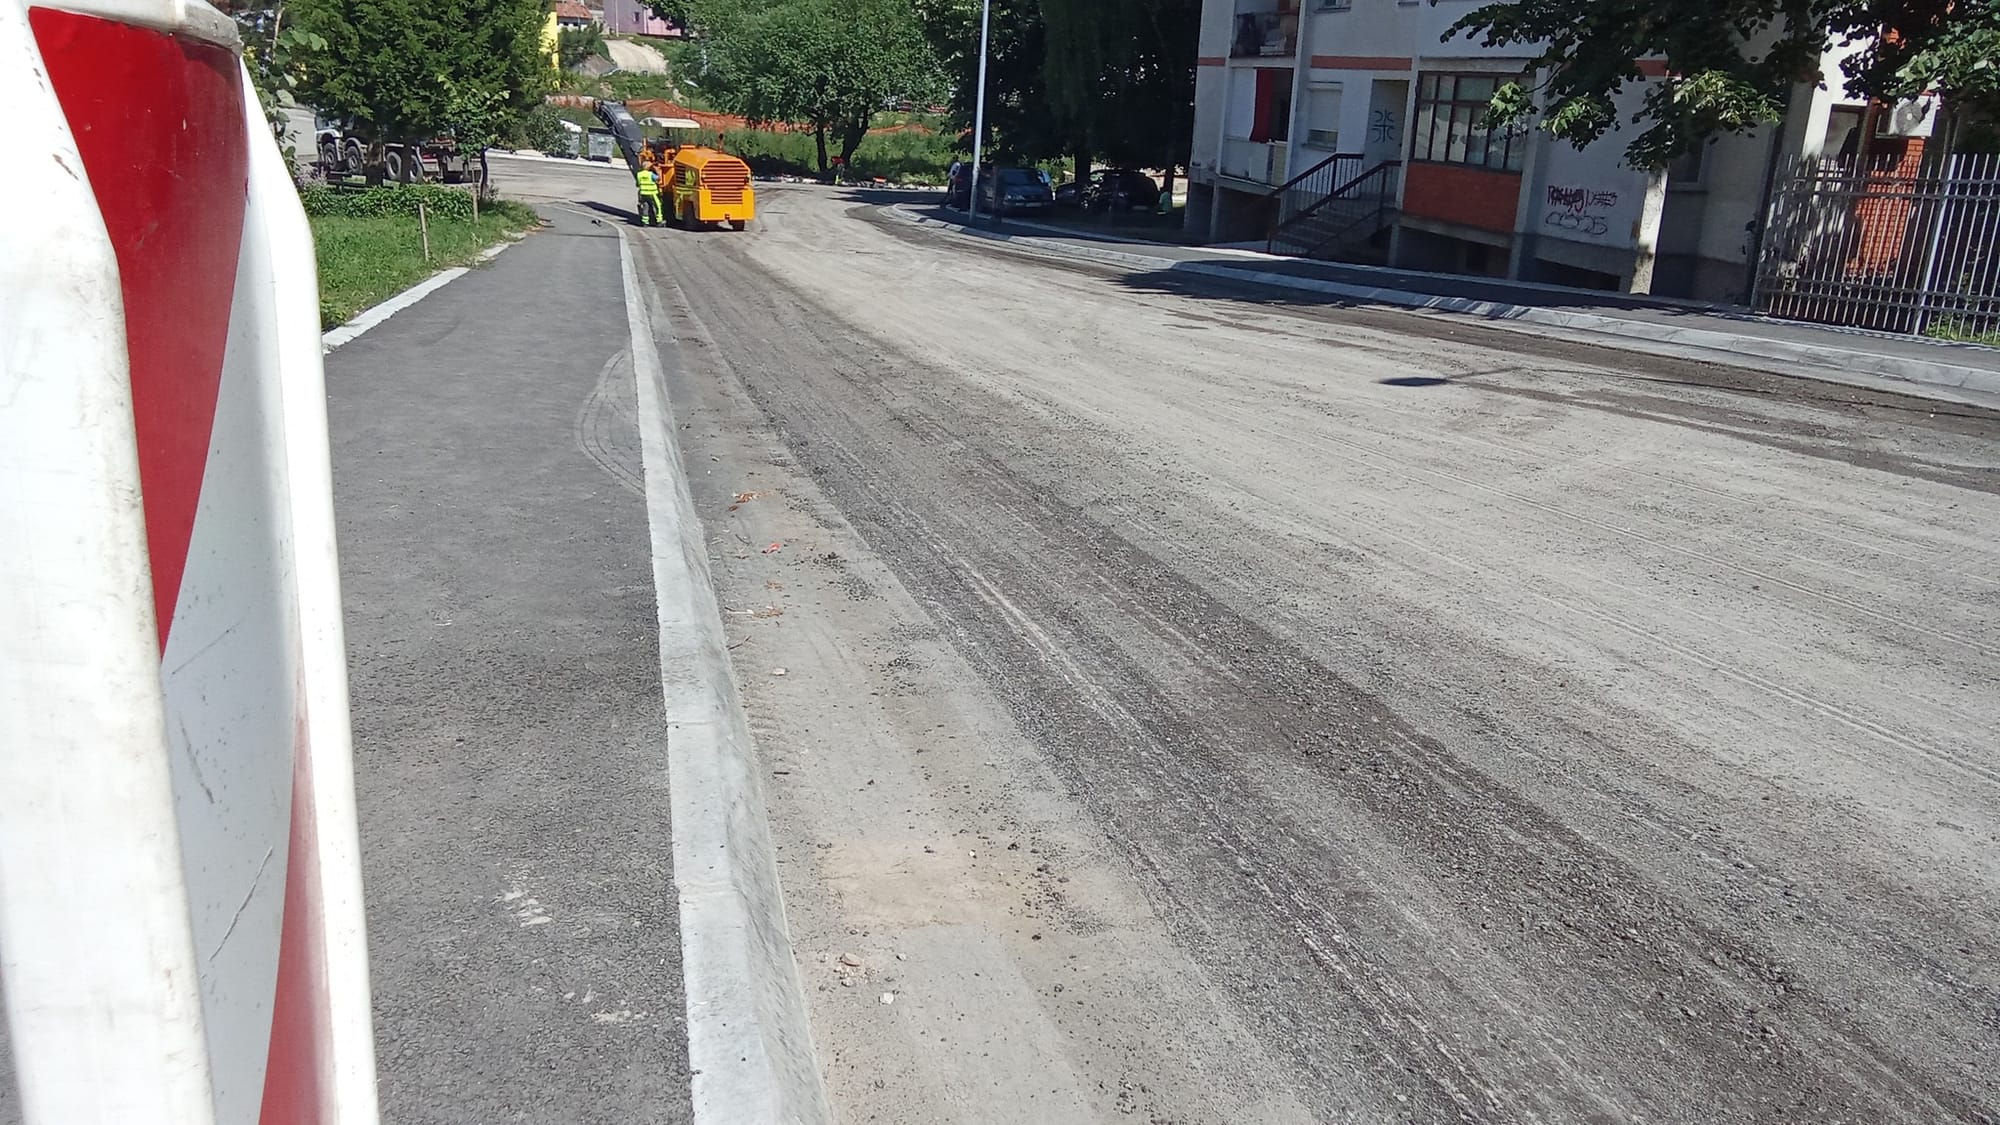 Skidaju nedavno stavljeni asfalt, da opet asfaltiraju